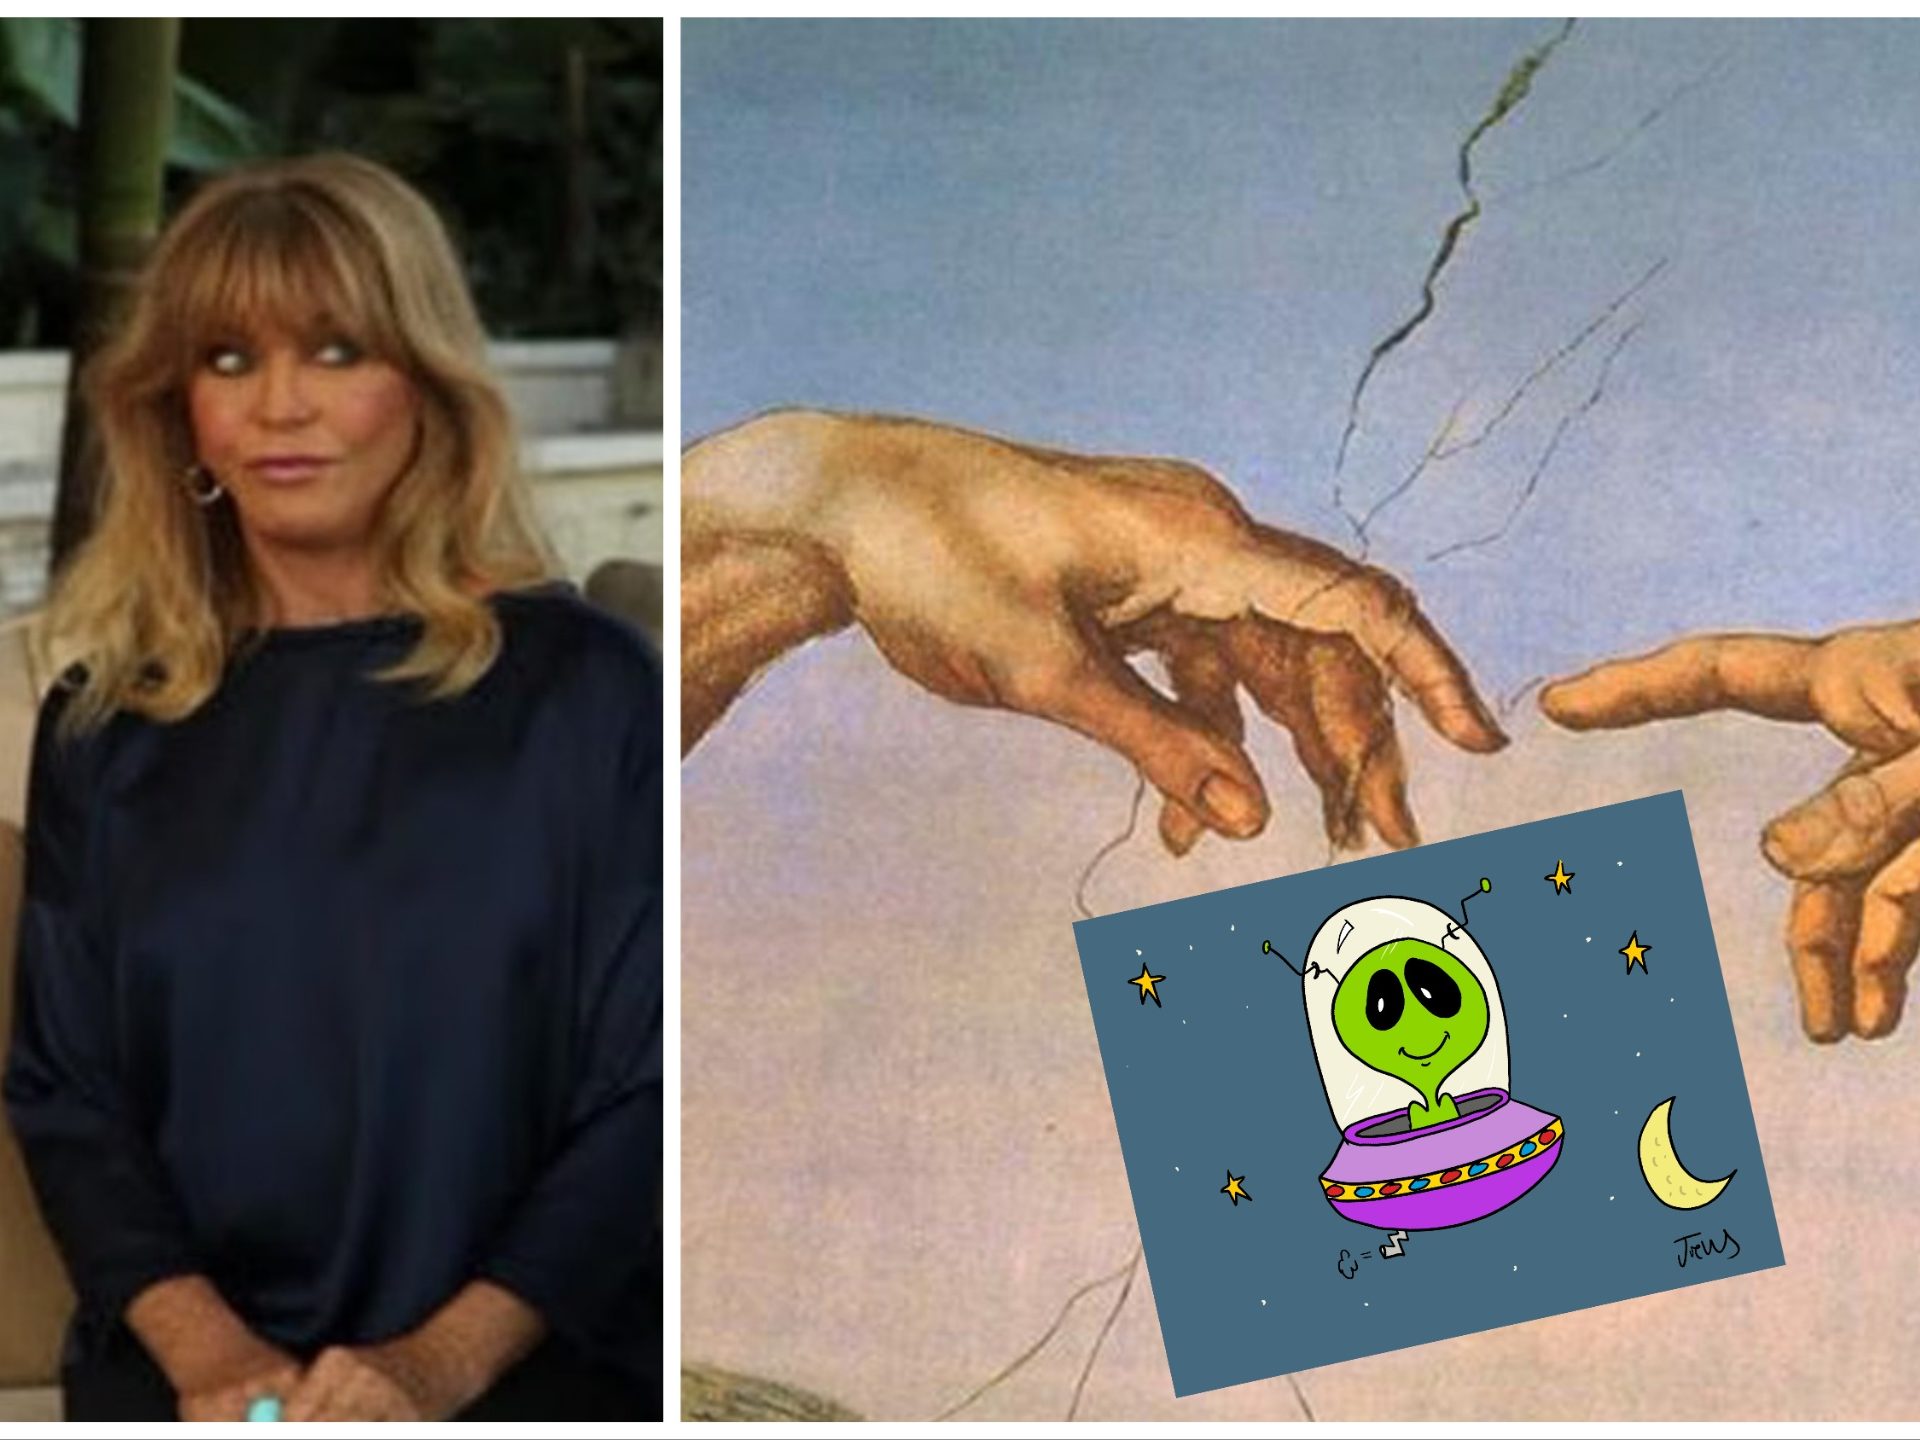 Goldie Hawn: "Un alieno mi ha toccato, sembrava il dito di Dio"